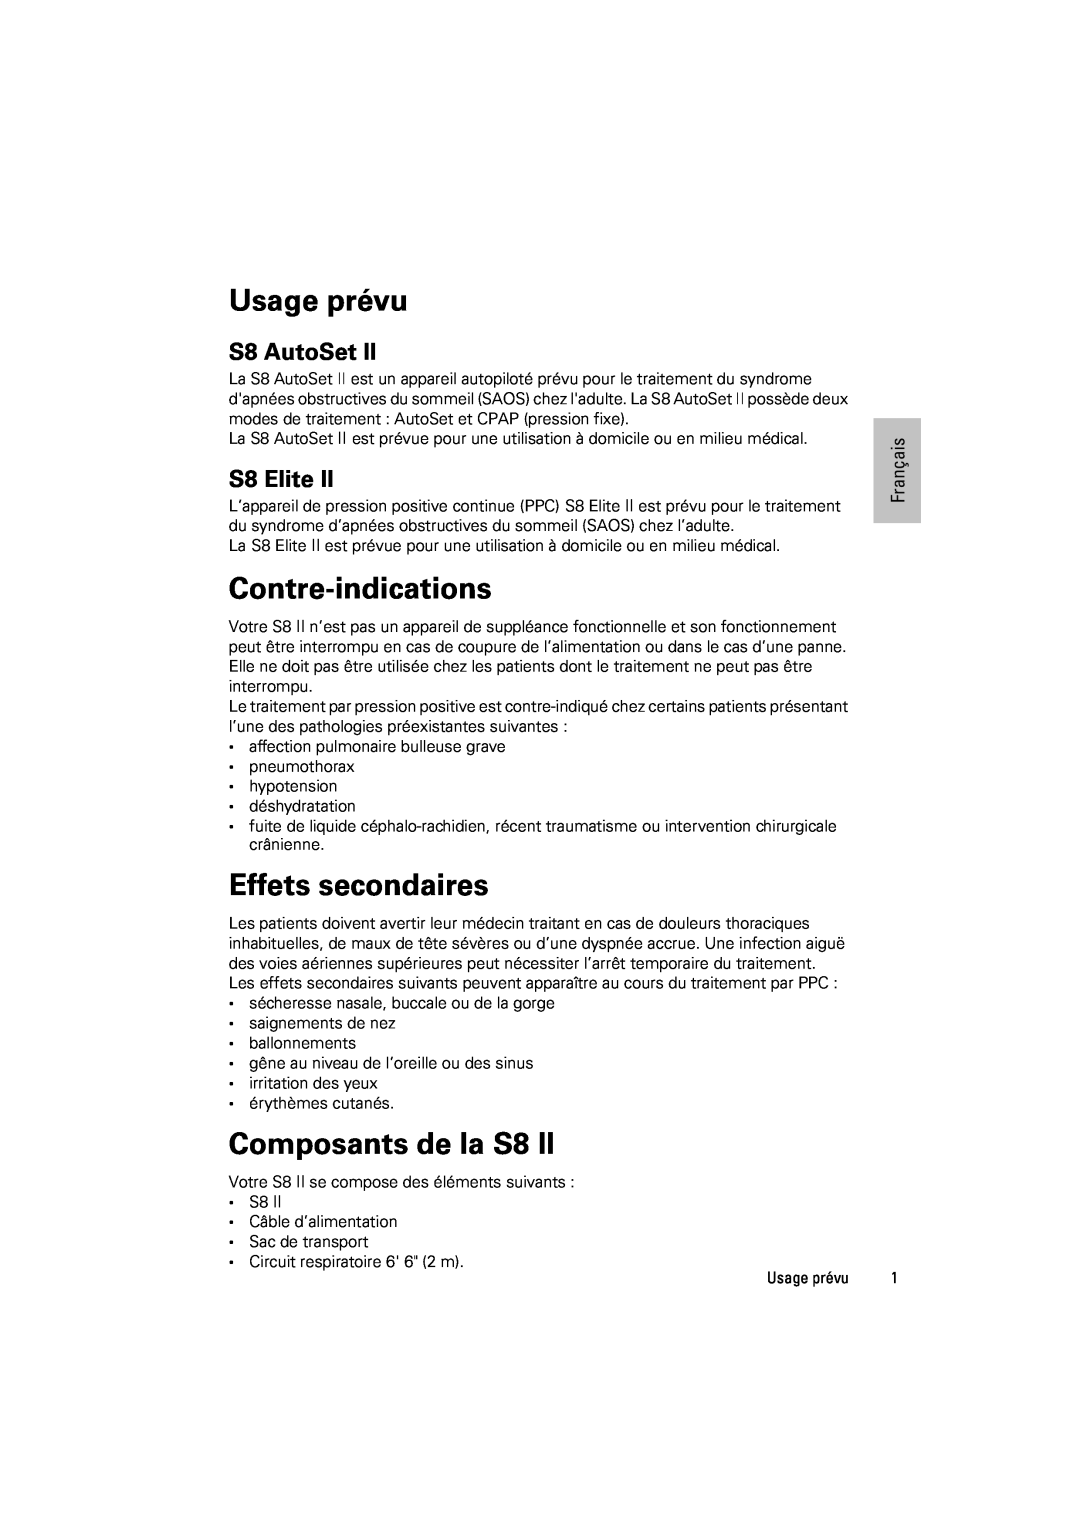 ResMed s8 manual Usage prévu, Contre-indications, Effets secondaires, Composants de la S8, S8 AutoSet, S8 Elite, Français 